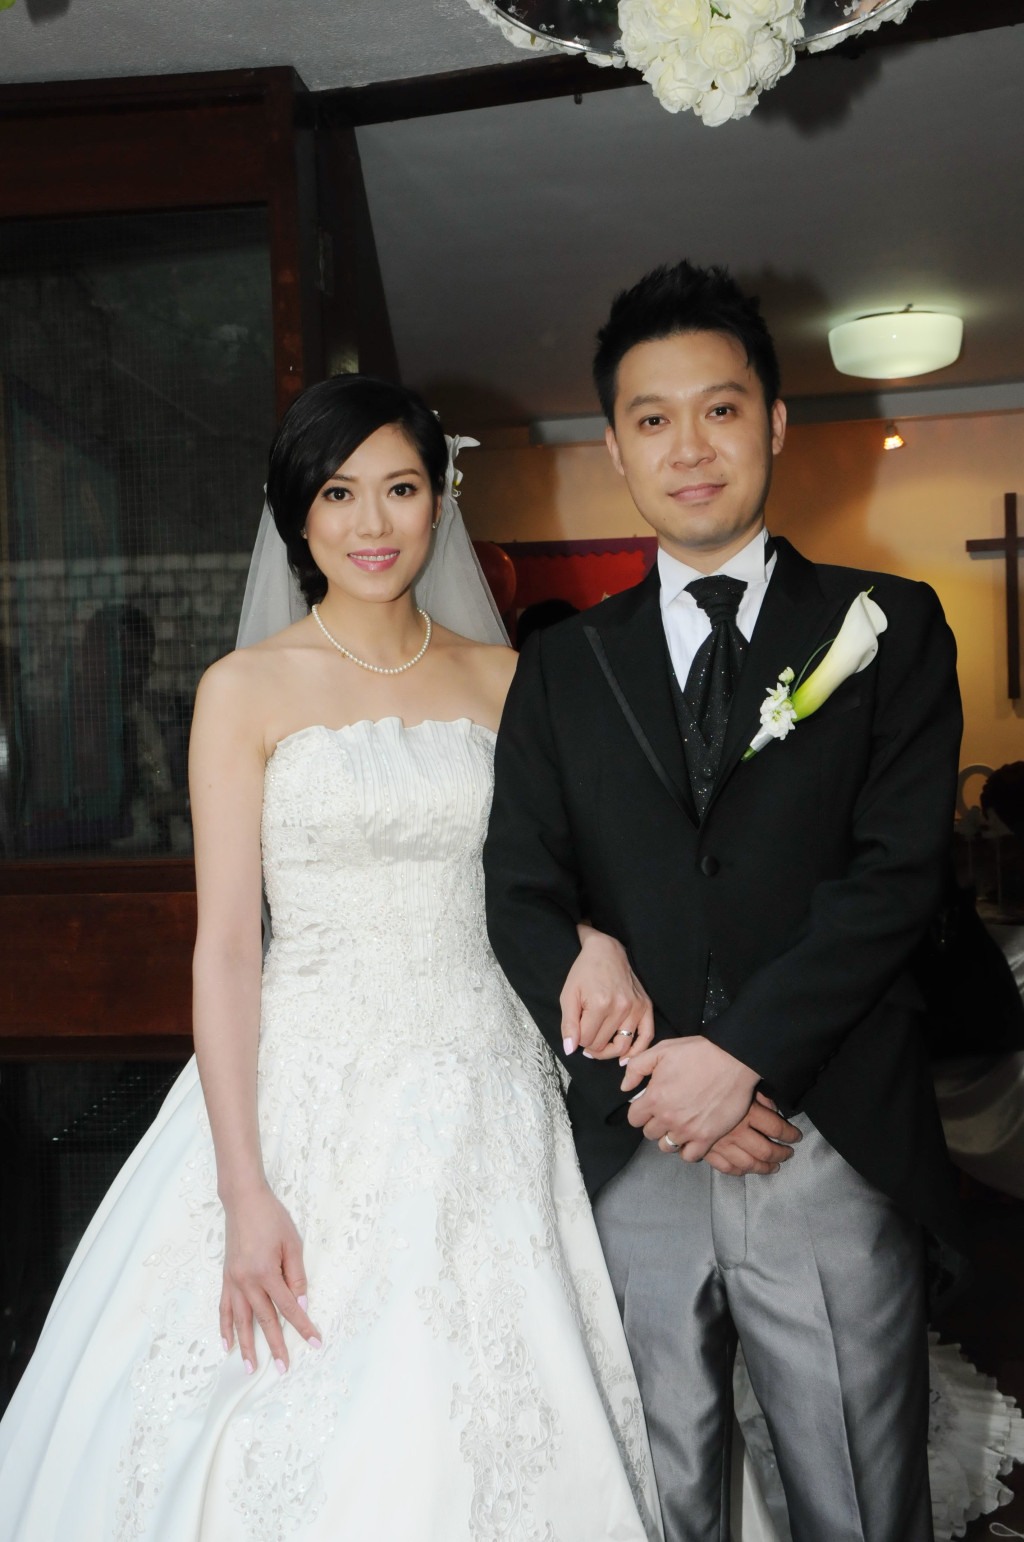  2013年，林淑敏与从事避雷针系统生意的商人陈中原结婚。